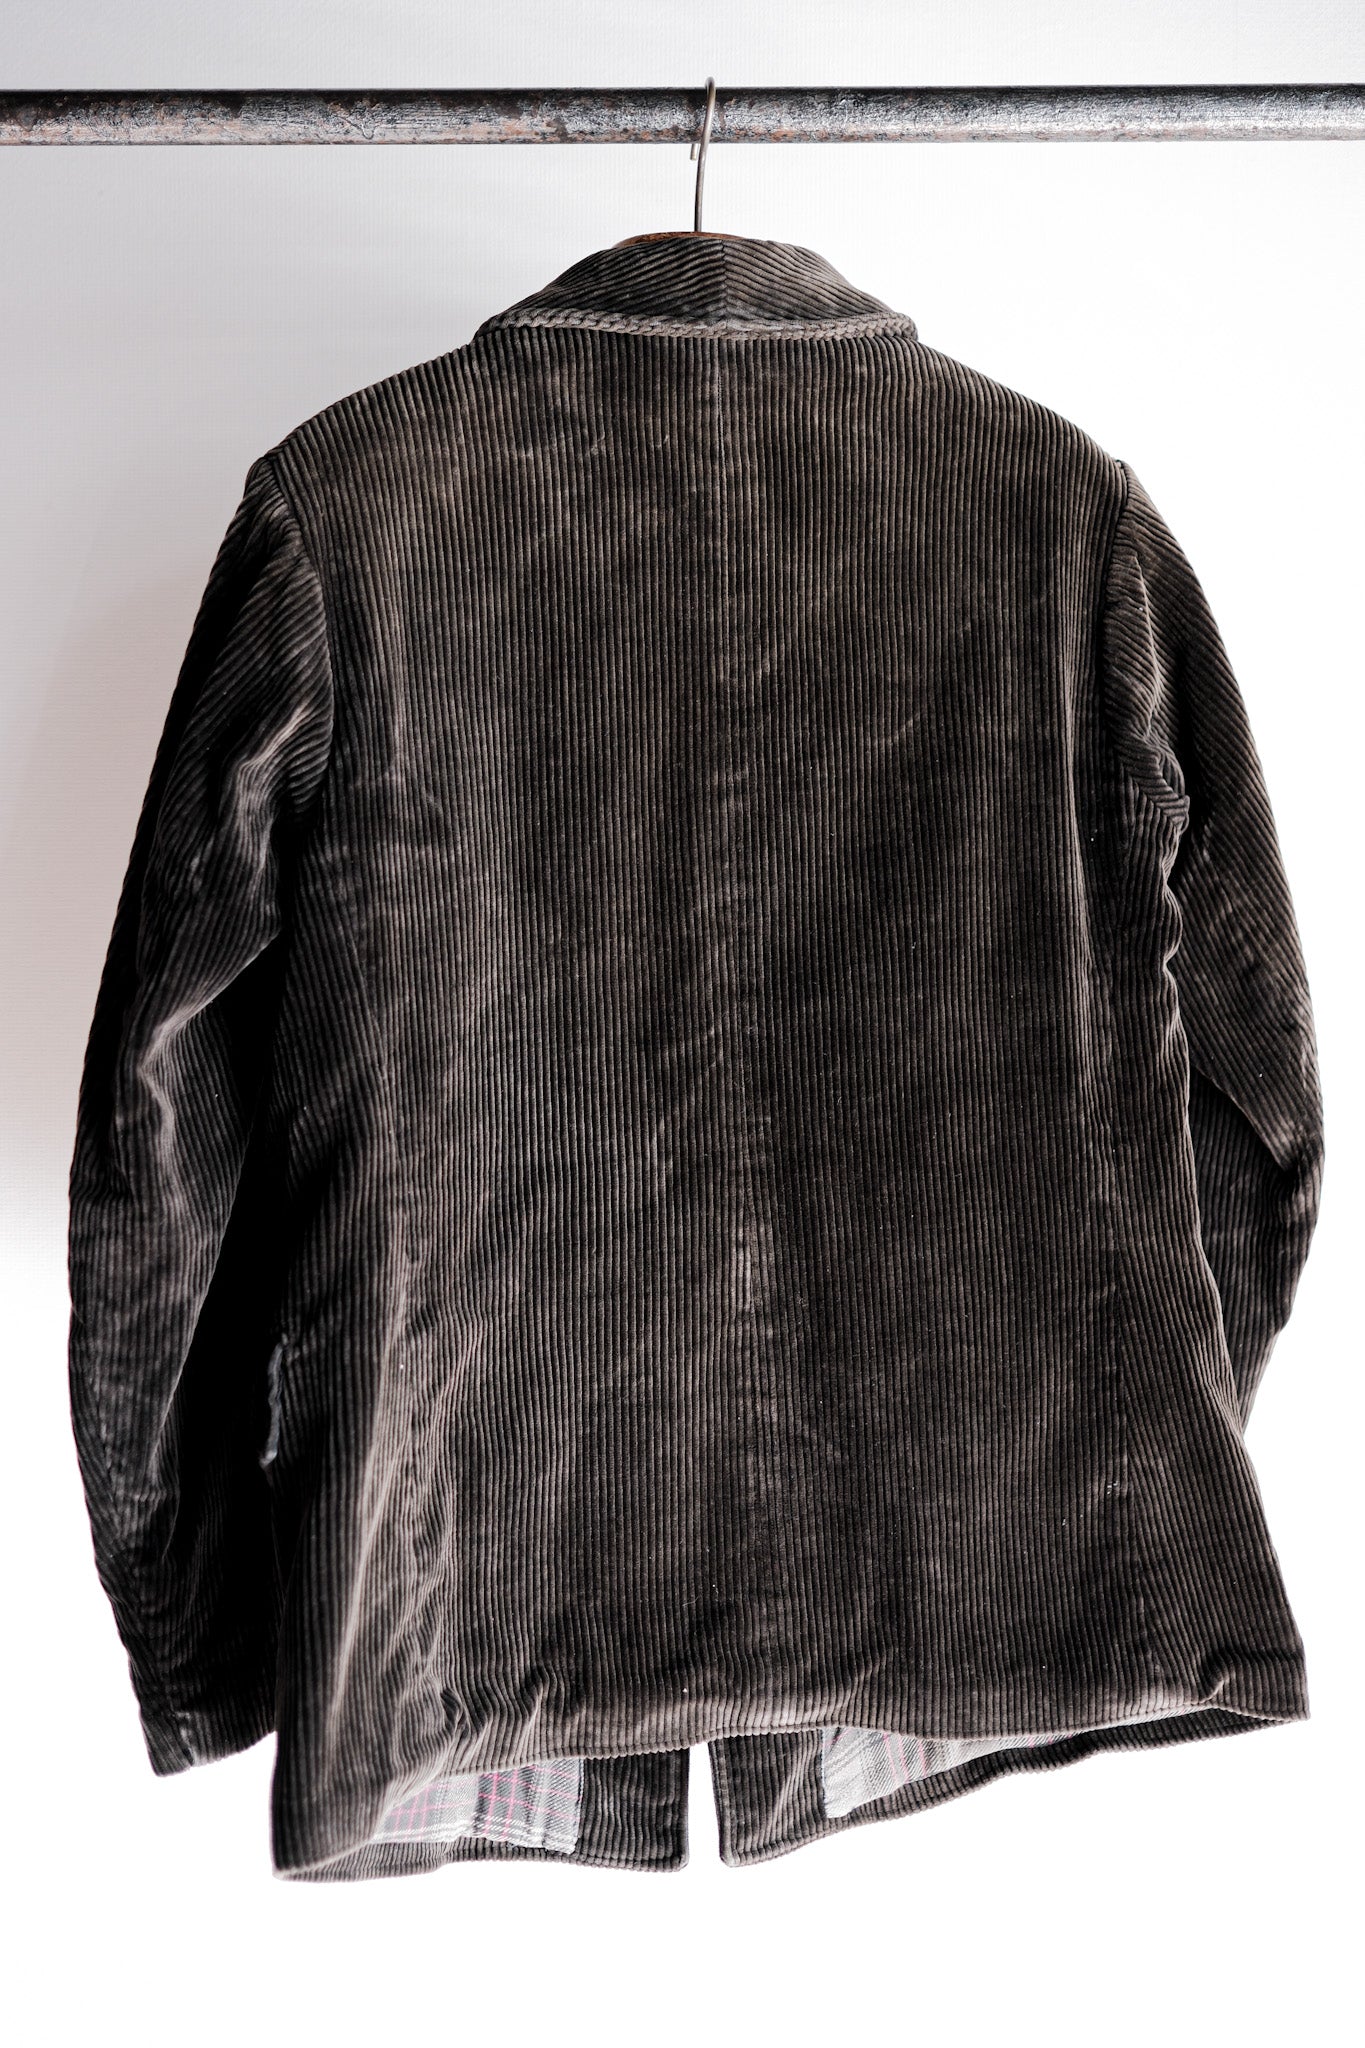 【~40's】French Vintage Dark Brown Corduroy Gamekeeper Hunting Jacket